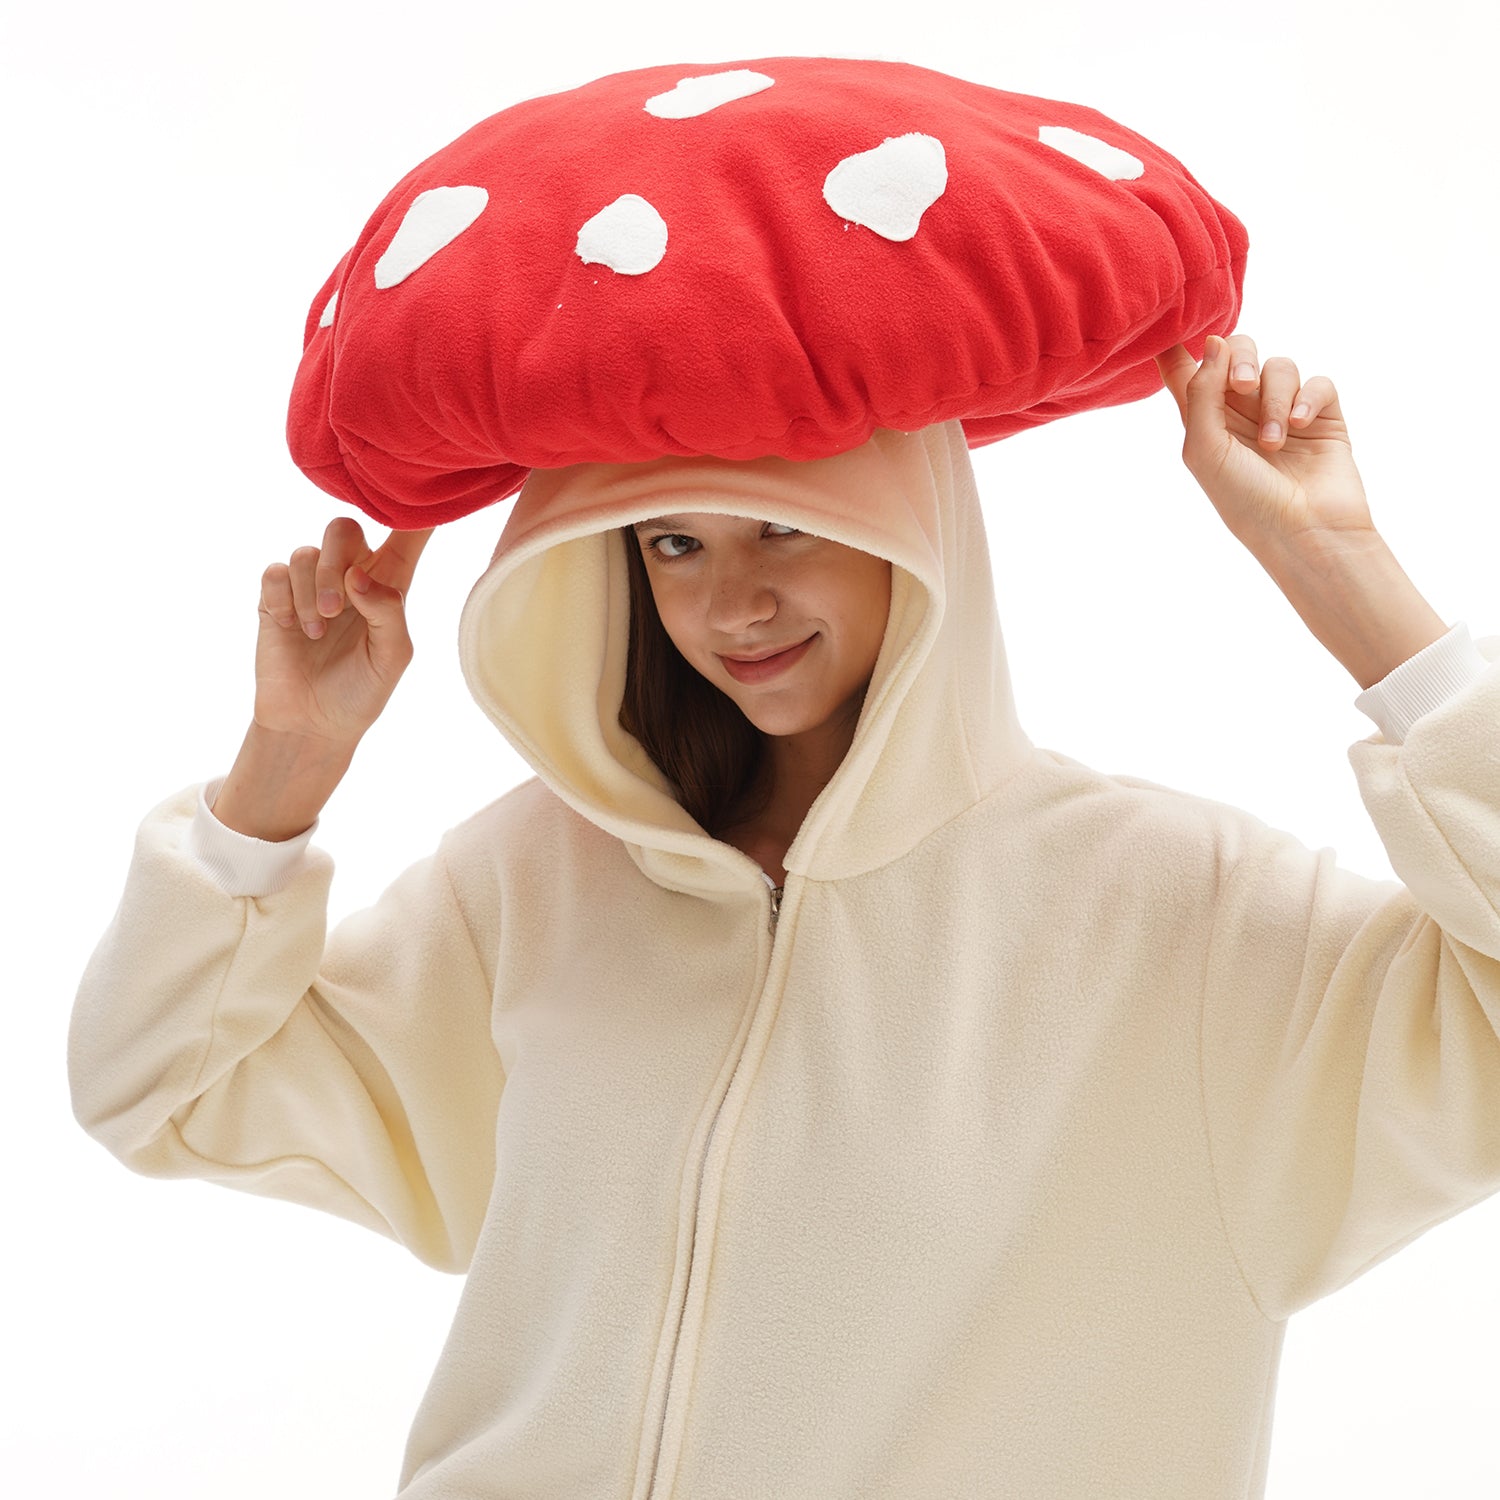 Red Mushroom Onesie